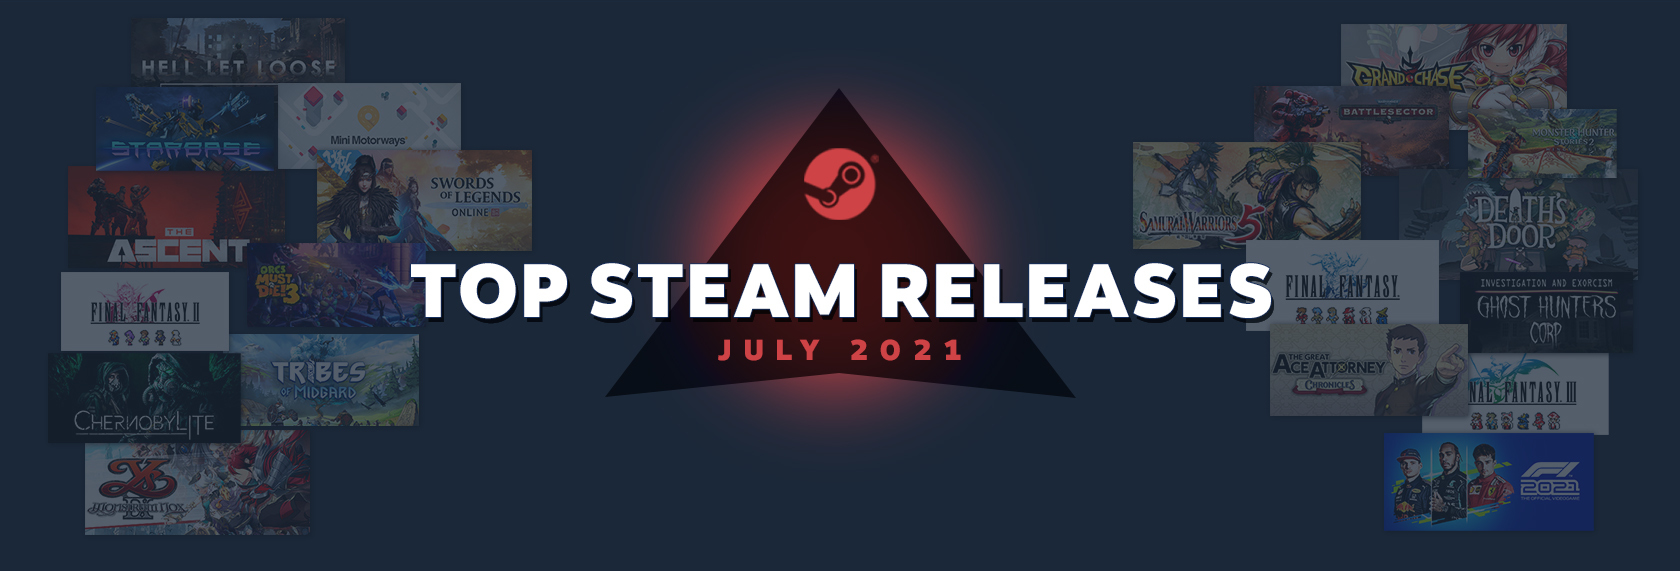 Steam :: Steamworks Development :: Steam Next Fest June 2023 Registration